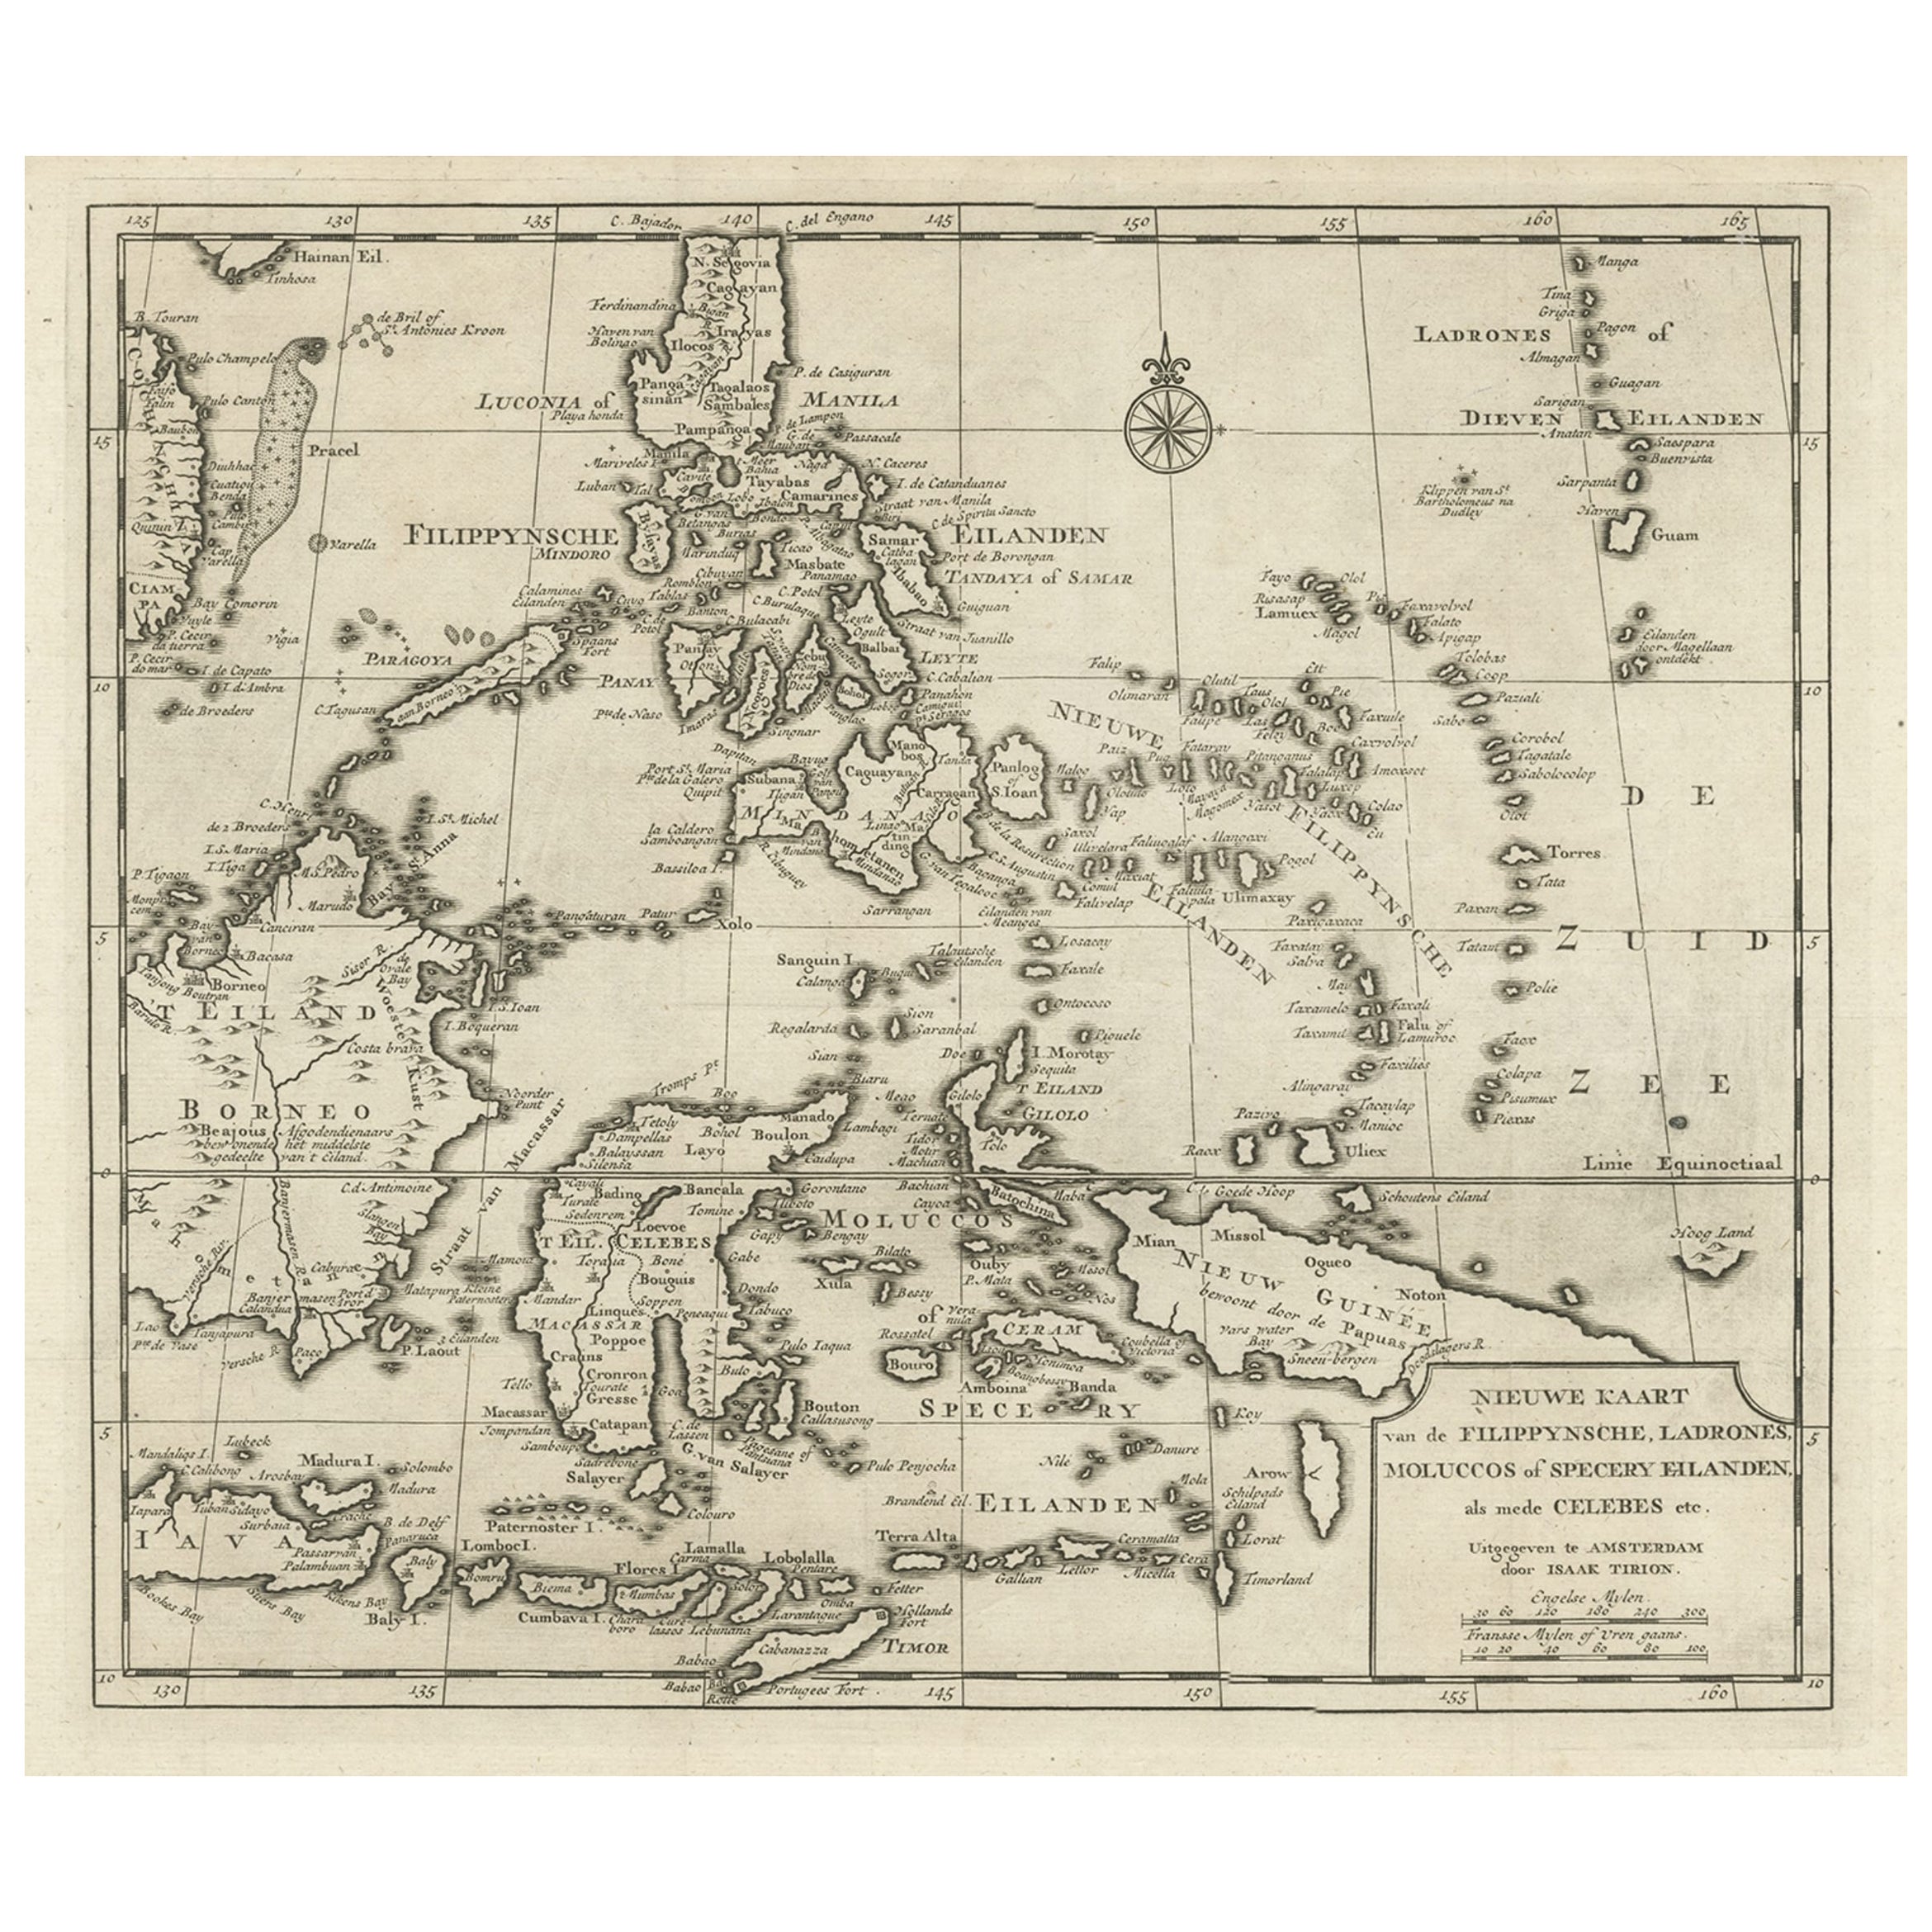 Ancienne carte des Philippines et d'une partie des « îlespices » d'Indonésie, 1744